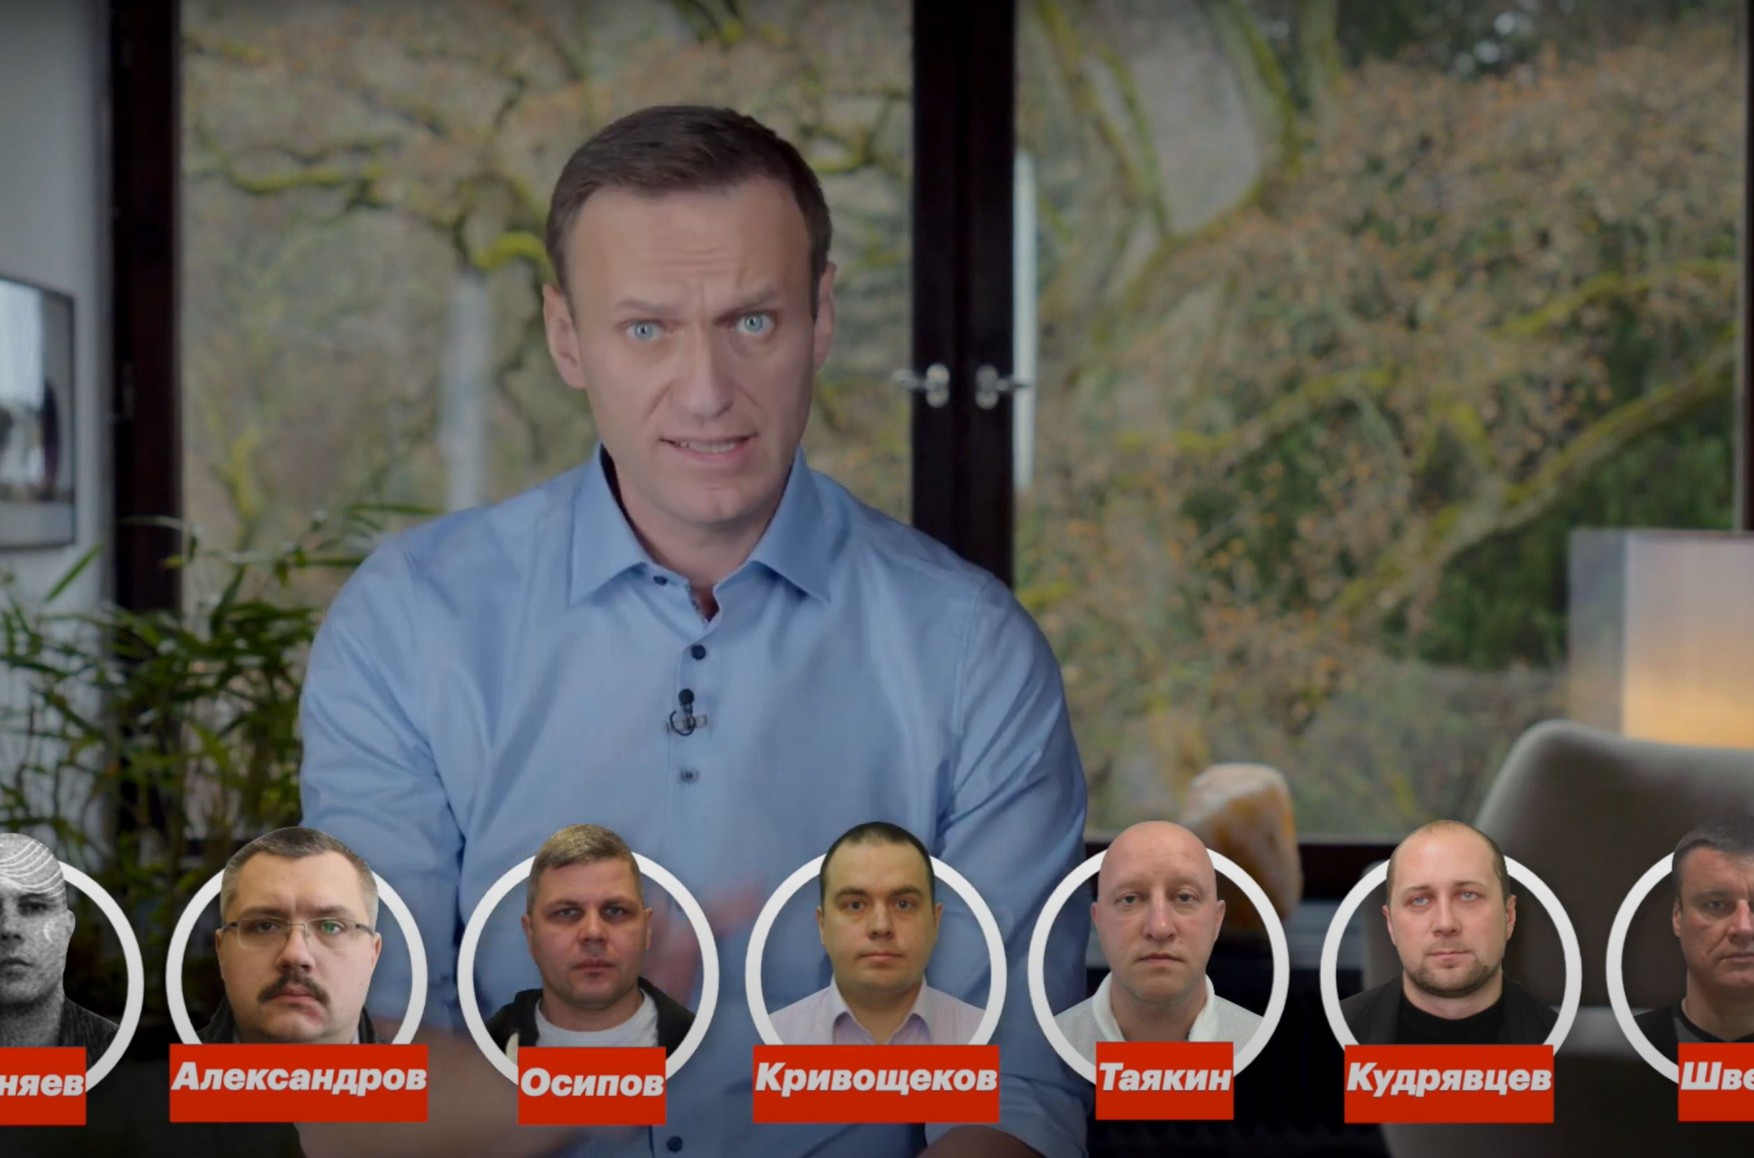 «Замах на Навального - це теракт». Депутати Томська, Пскова, Карелії, Москви і Новосибірська наполягають на кримінальній справі